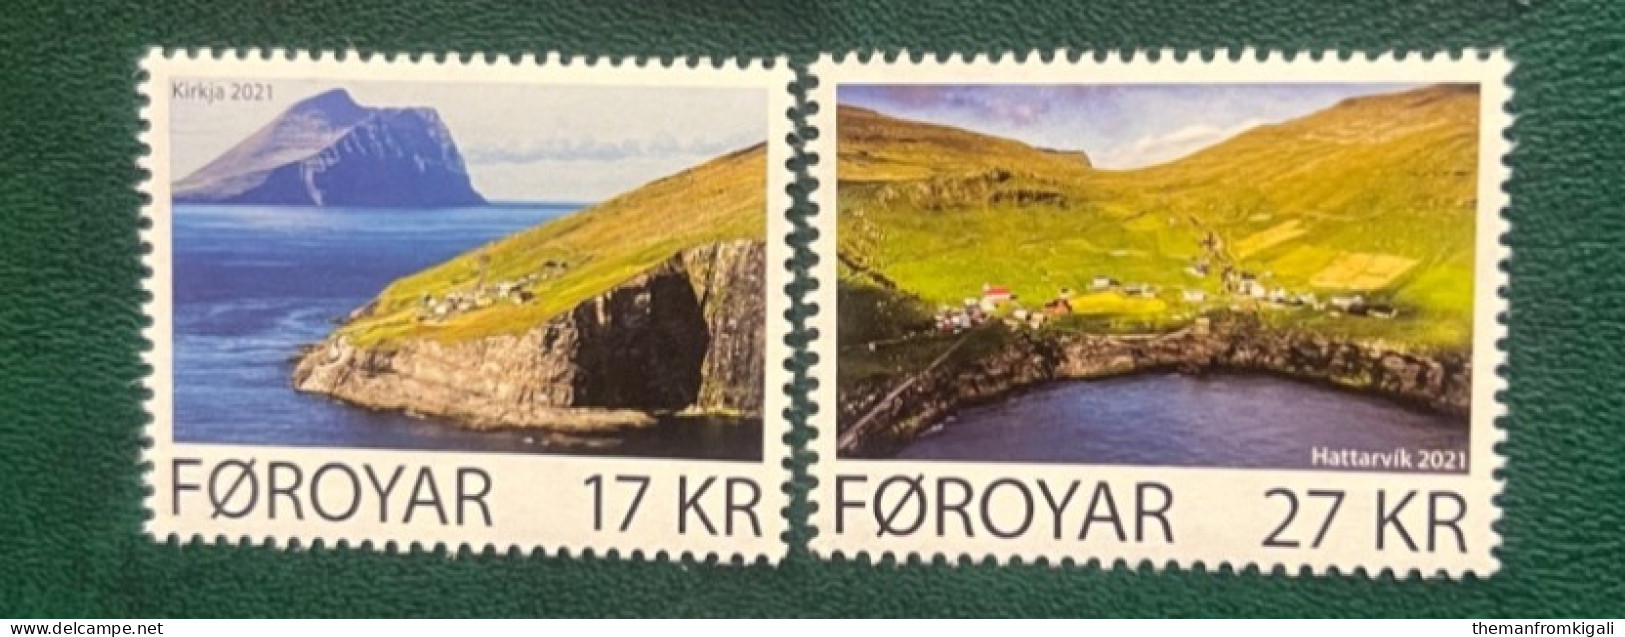 Faroe Islands 2021 Kirkja & Hattarvik - Färöer Inseln